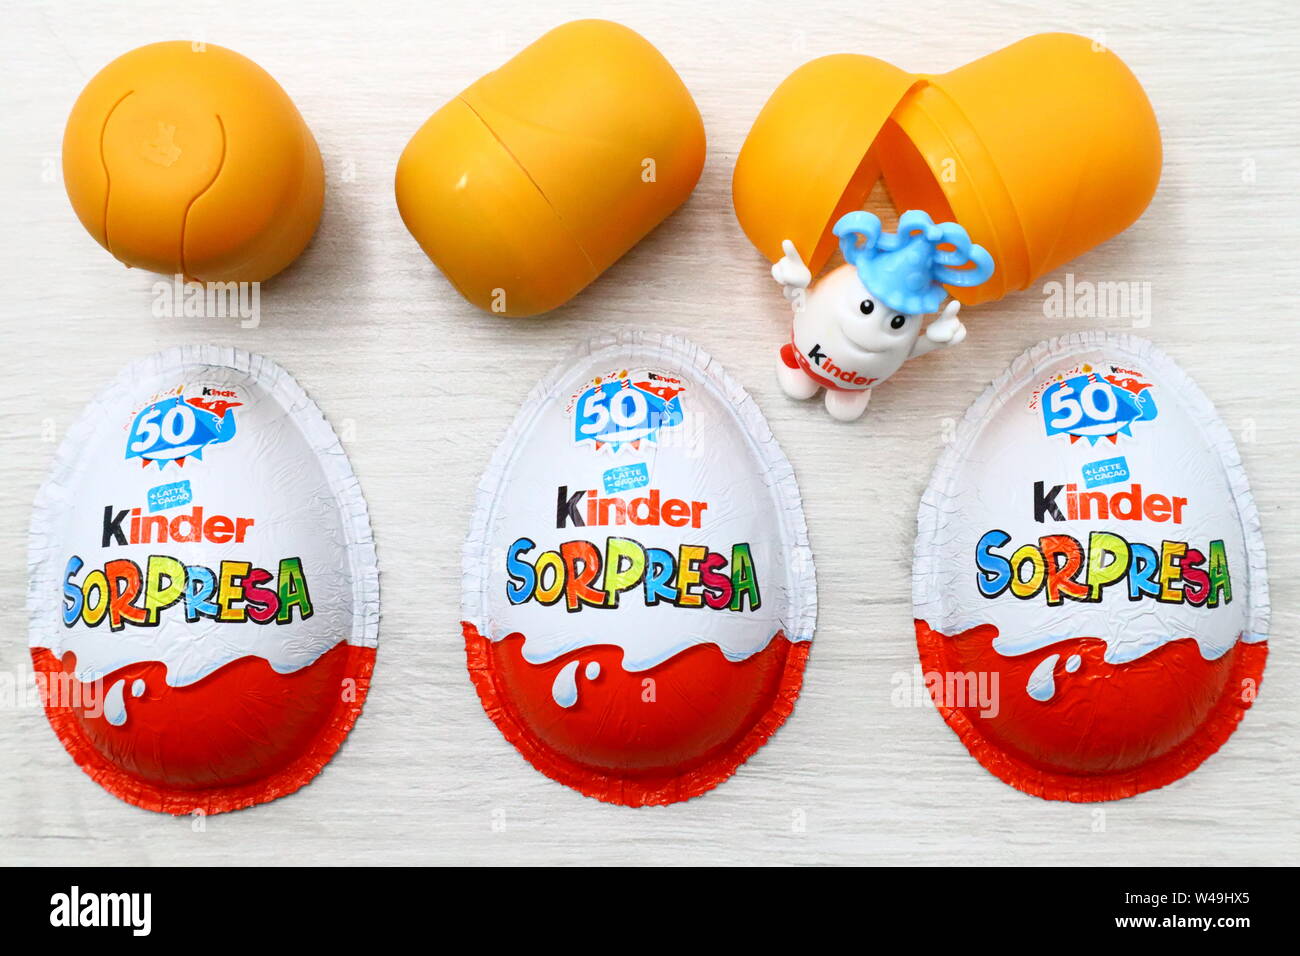 Kinder sorpresa di uova di cioccolato. Kinder sorpresa è un marchio di prodotti realizzati in Italia da Ferrero Foto Stock